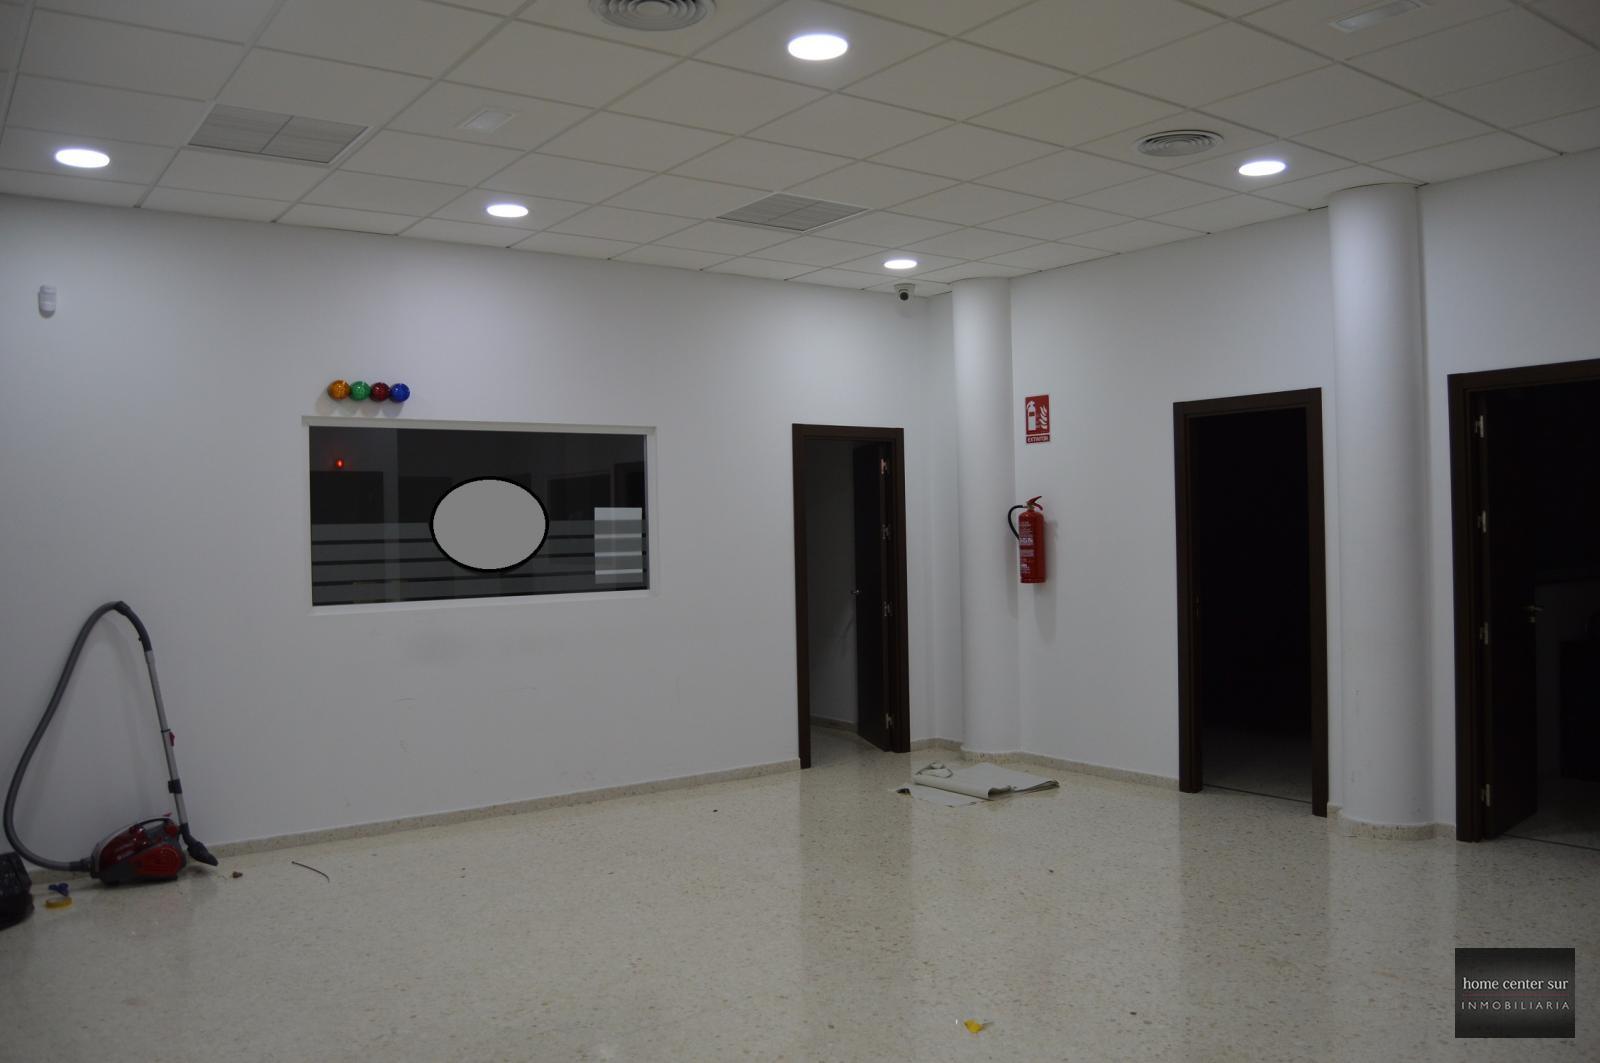 Kontor udlejes på lang tid I Avenida de Mijas (Fuengirola), 4.950€/måned